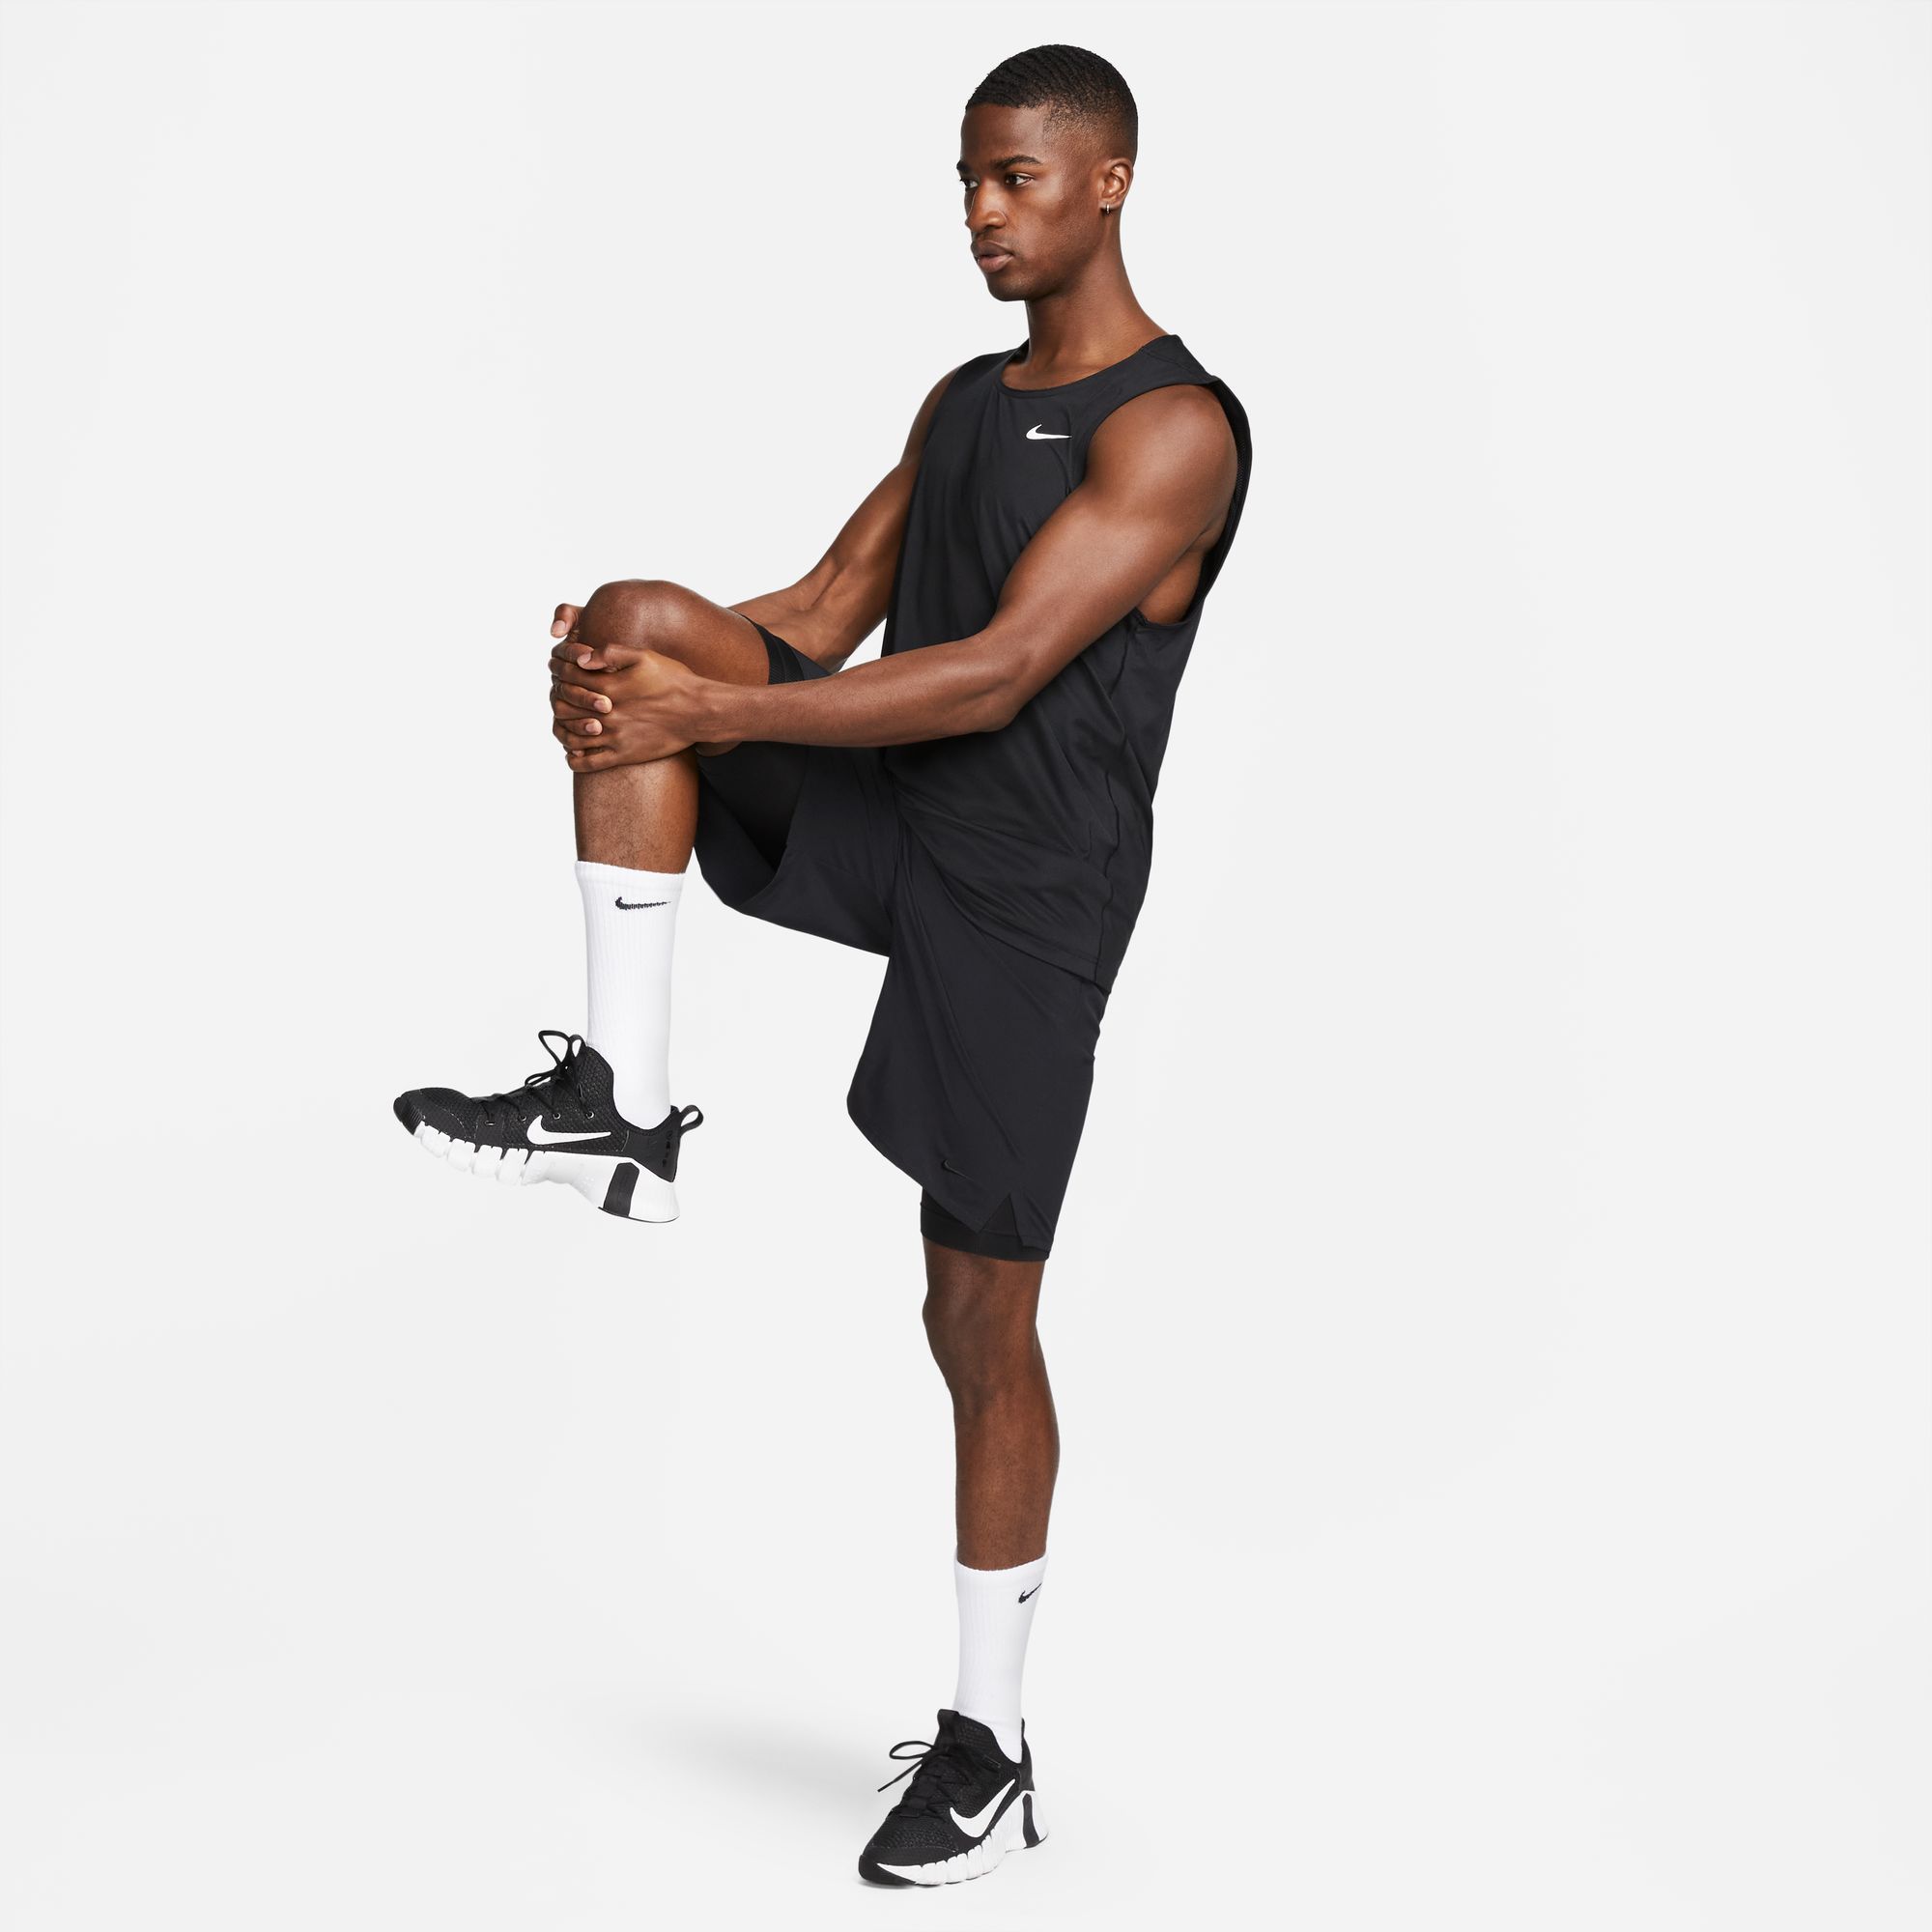 Nike Men's Dri-FIT Ready Fitness Tank Top